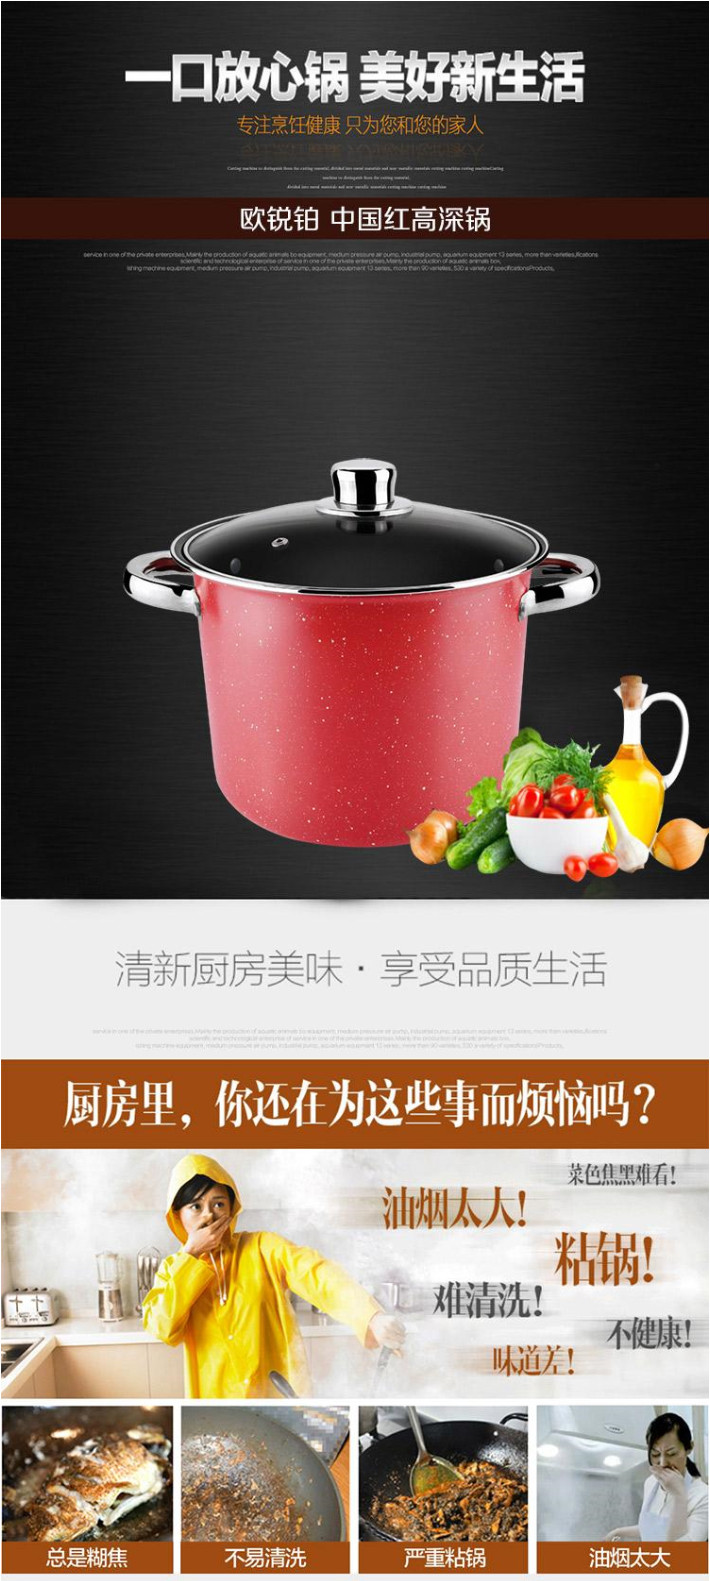 欧锐铂 中国红高深锅 荷叶不粘易清洗可视锅盖 煤气、电磁炉可用锅